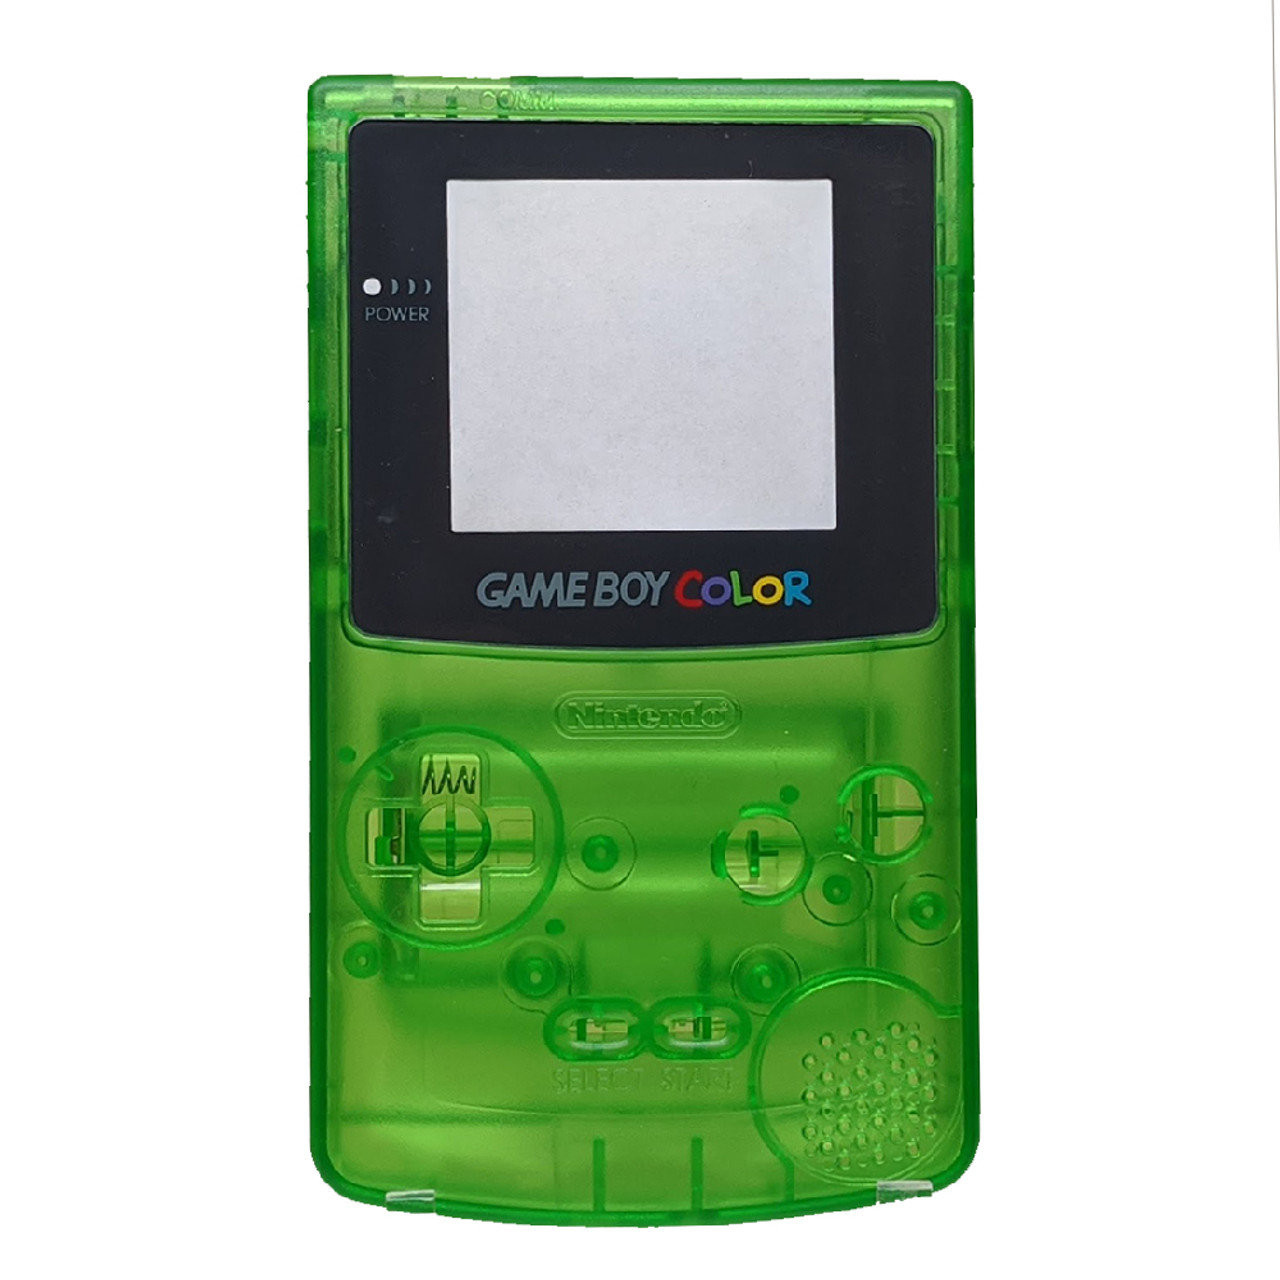 Nintendo Game Boy Color - Green